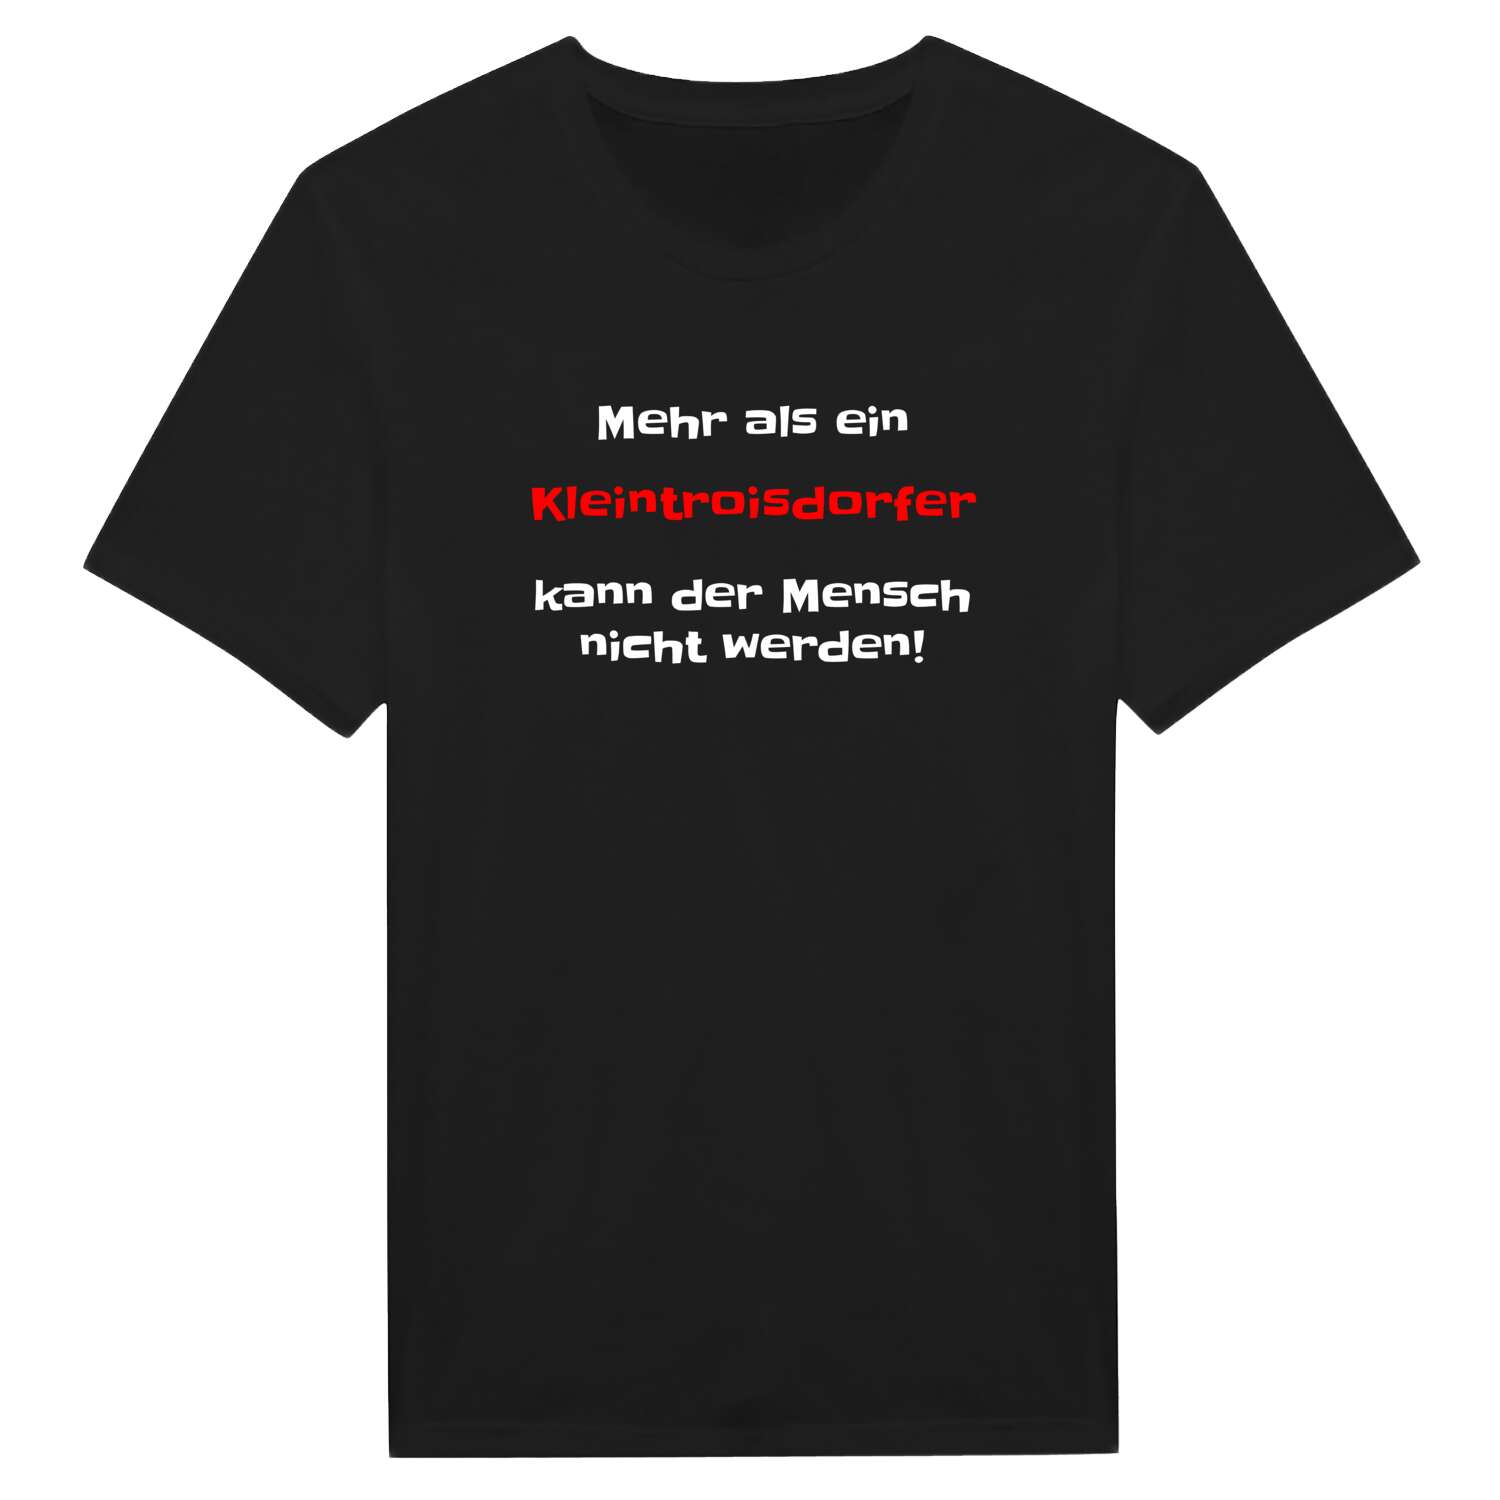 Kleintroisdorf T-Shirt »Mehr als ein«